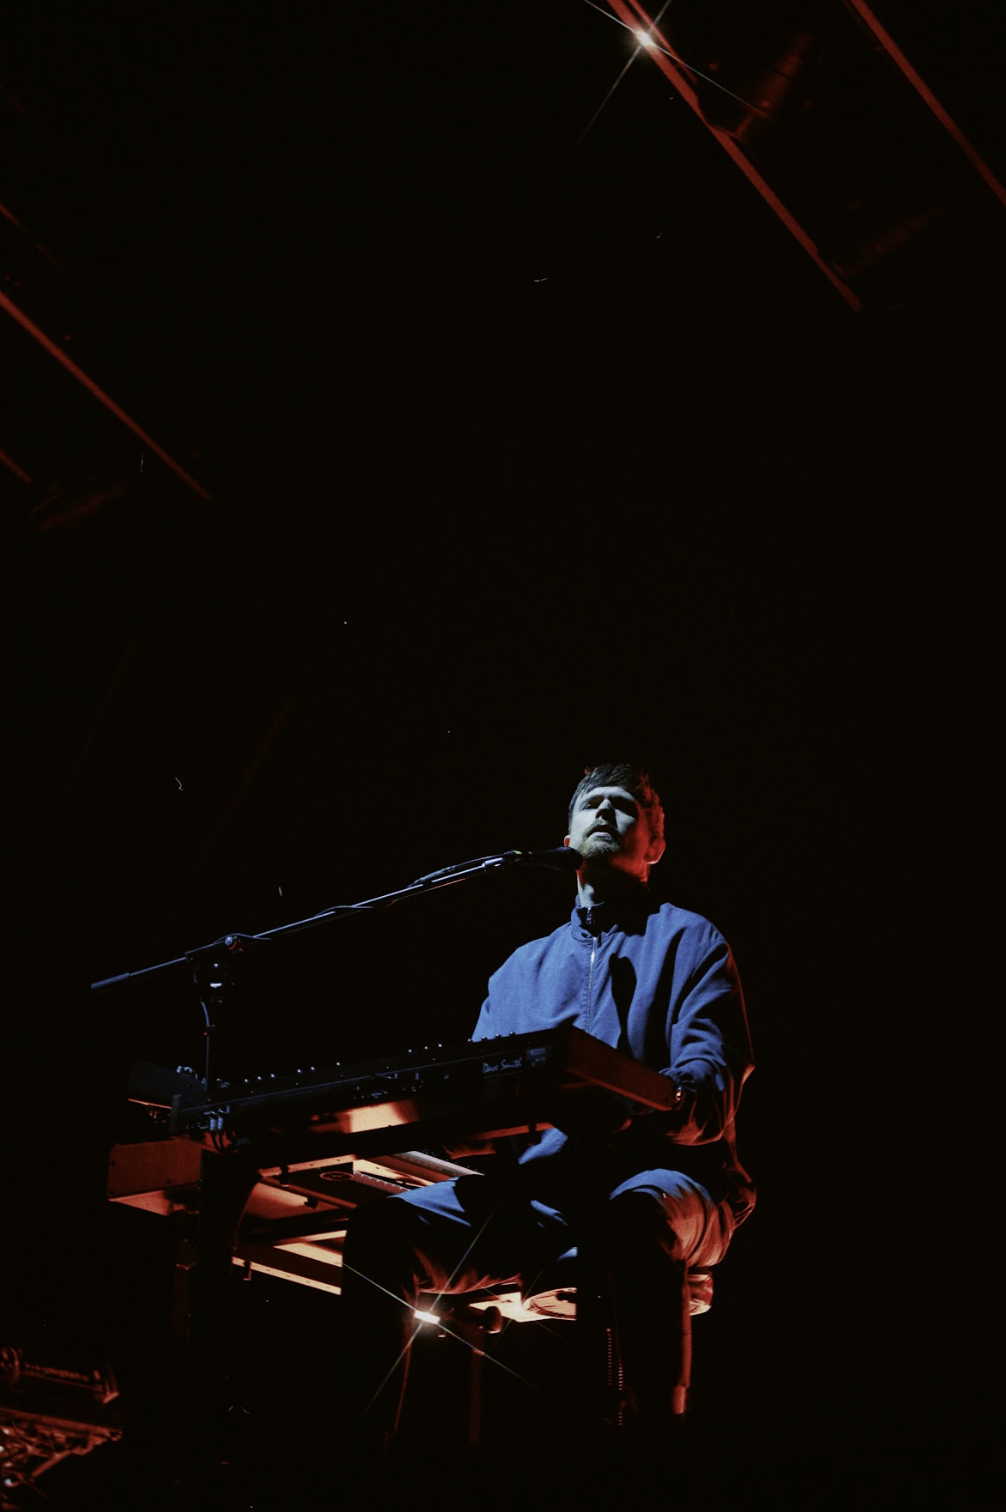 Músico en concierto tocando el piano bajo reflectores